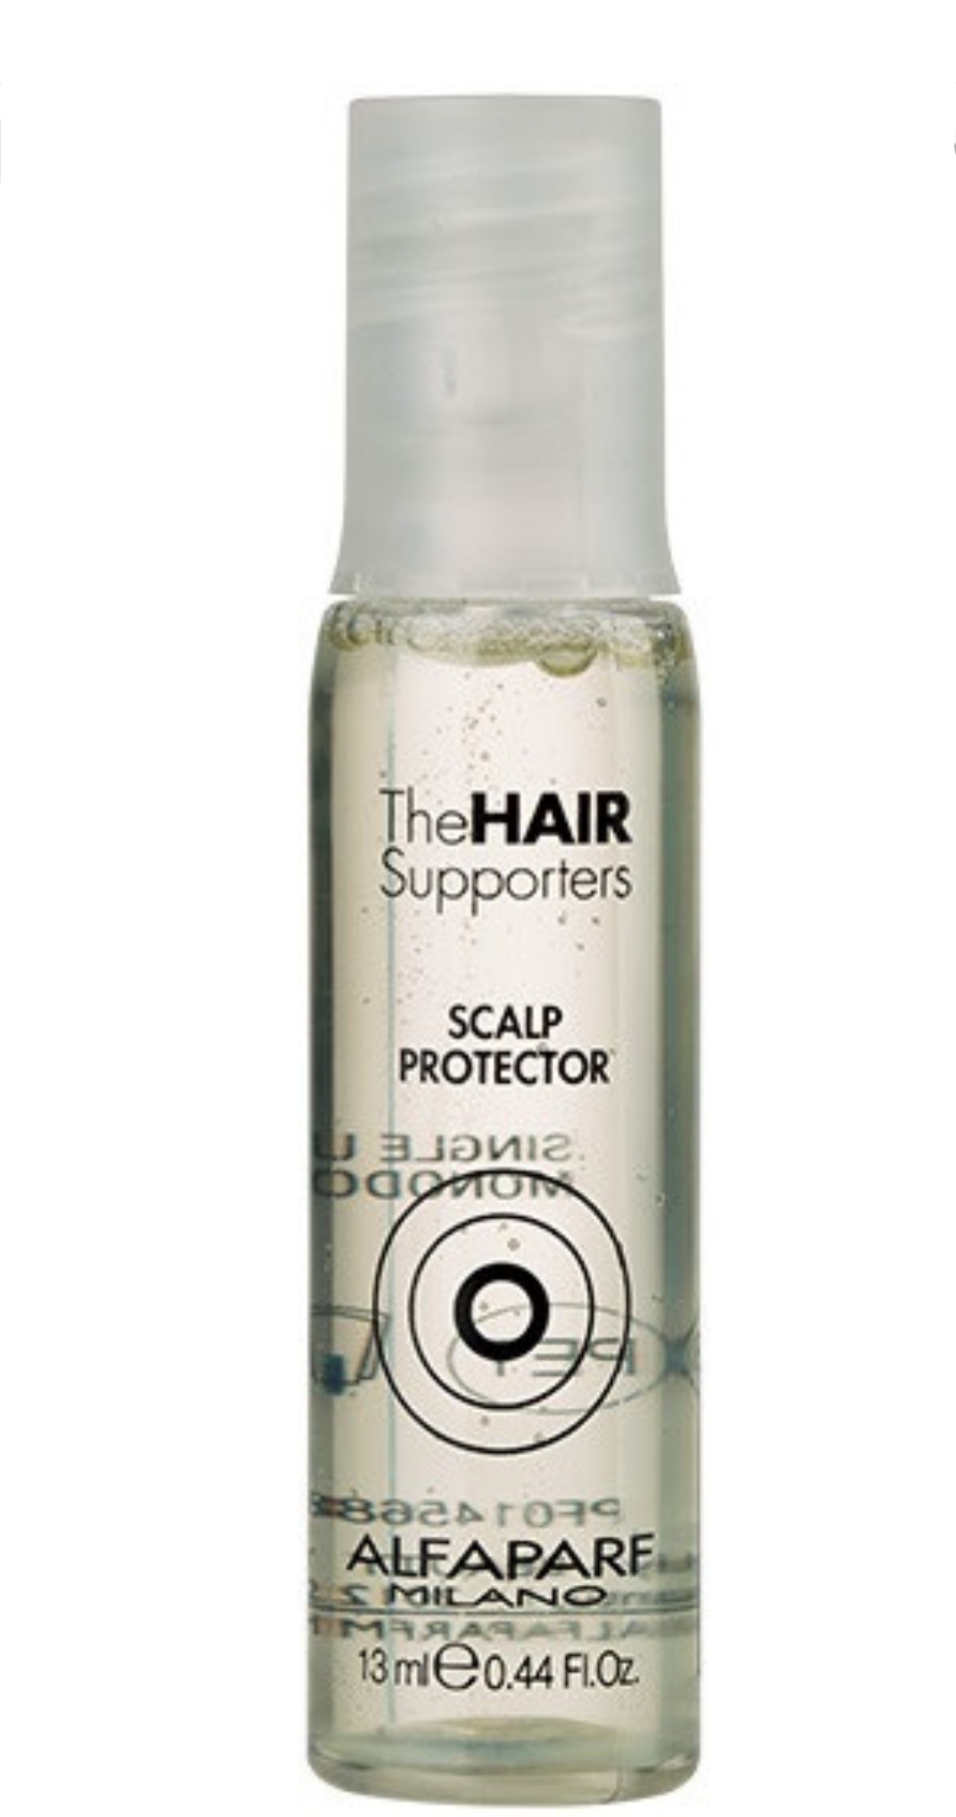 فراورده های حالت دهنده ،نرم کننده وتثبیت کننده آرایش مو (کرمها ، لوسیونها وروغنها) ALFA PARF MILANO Hair supporters scalp protector